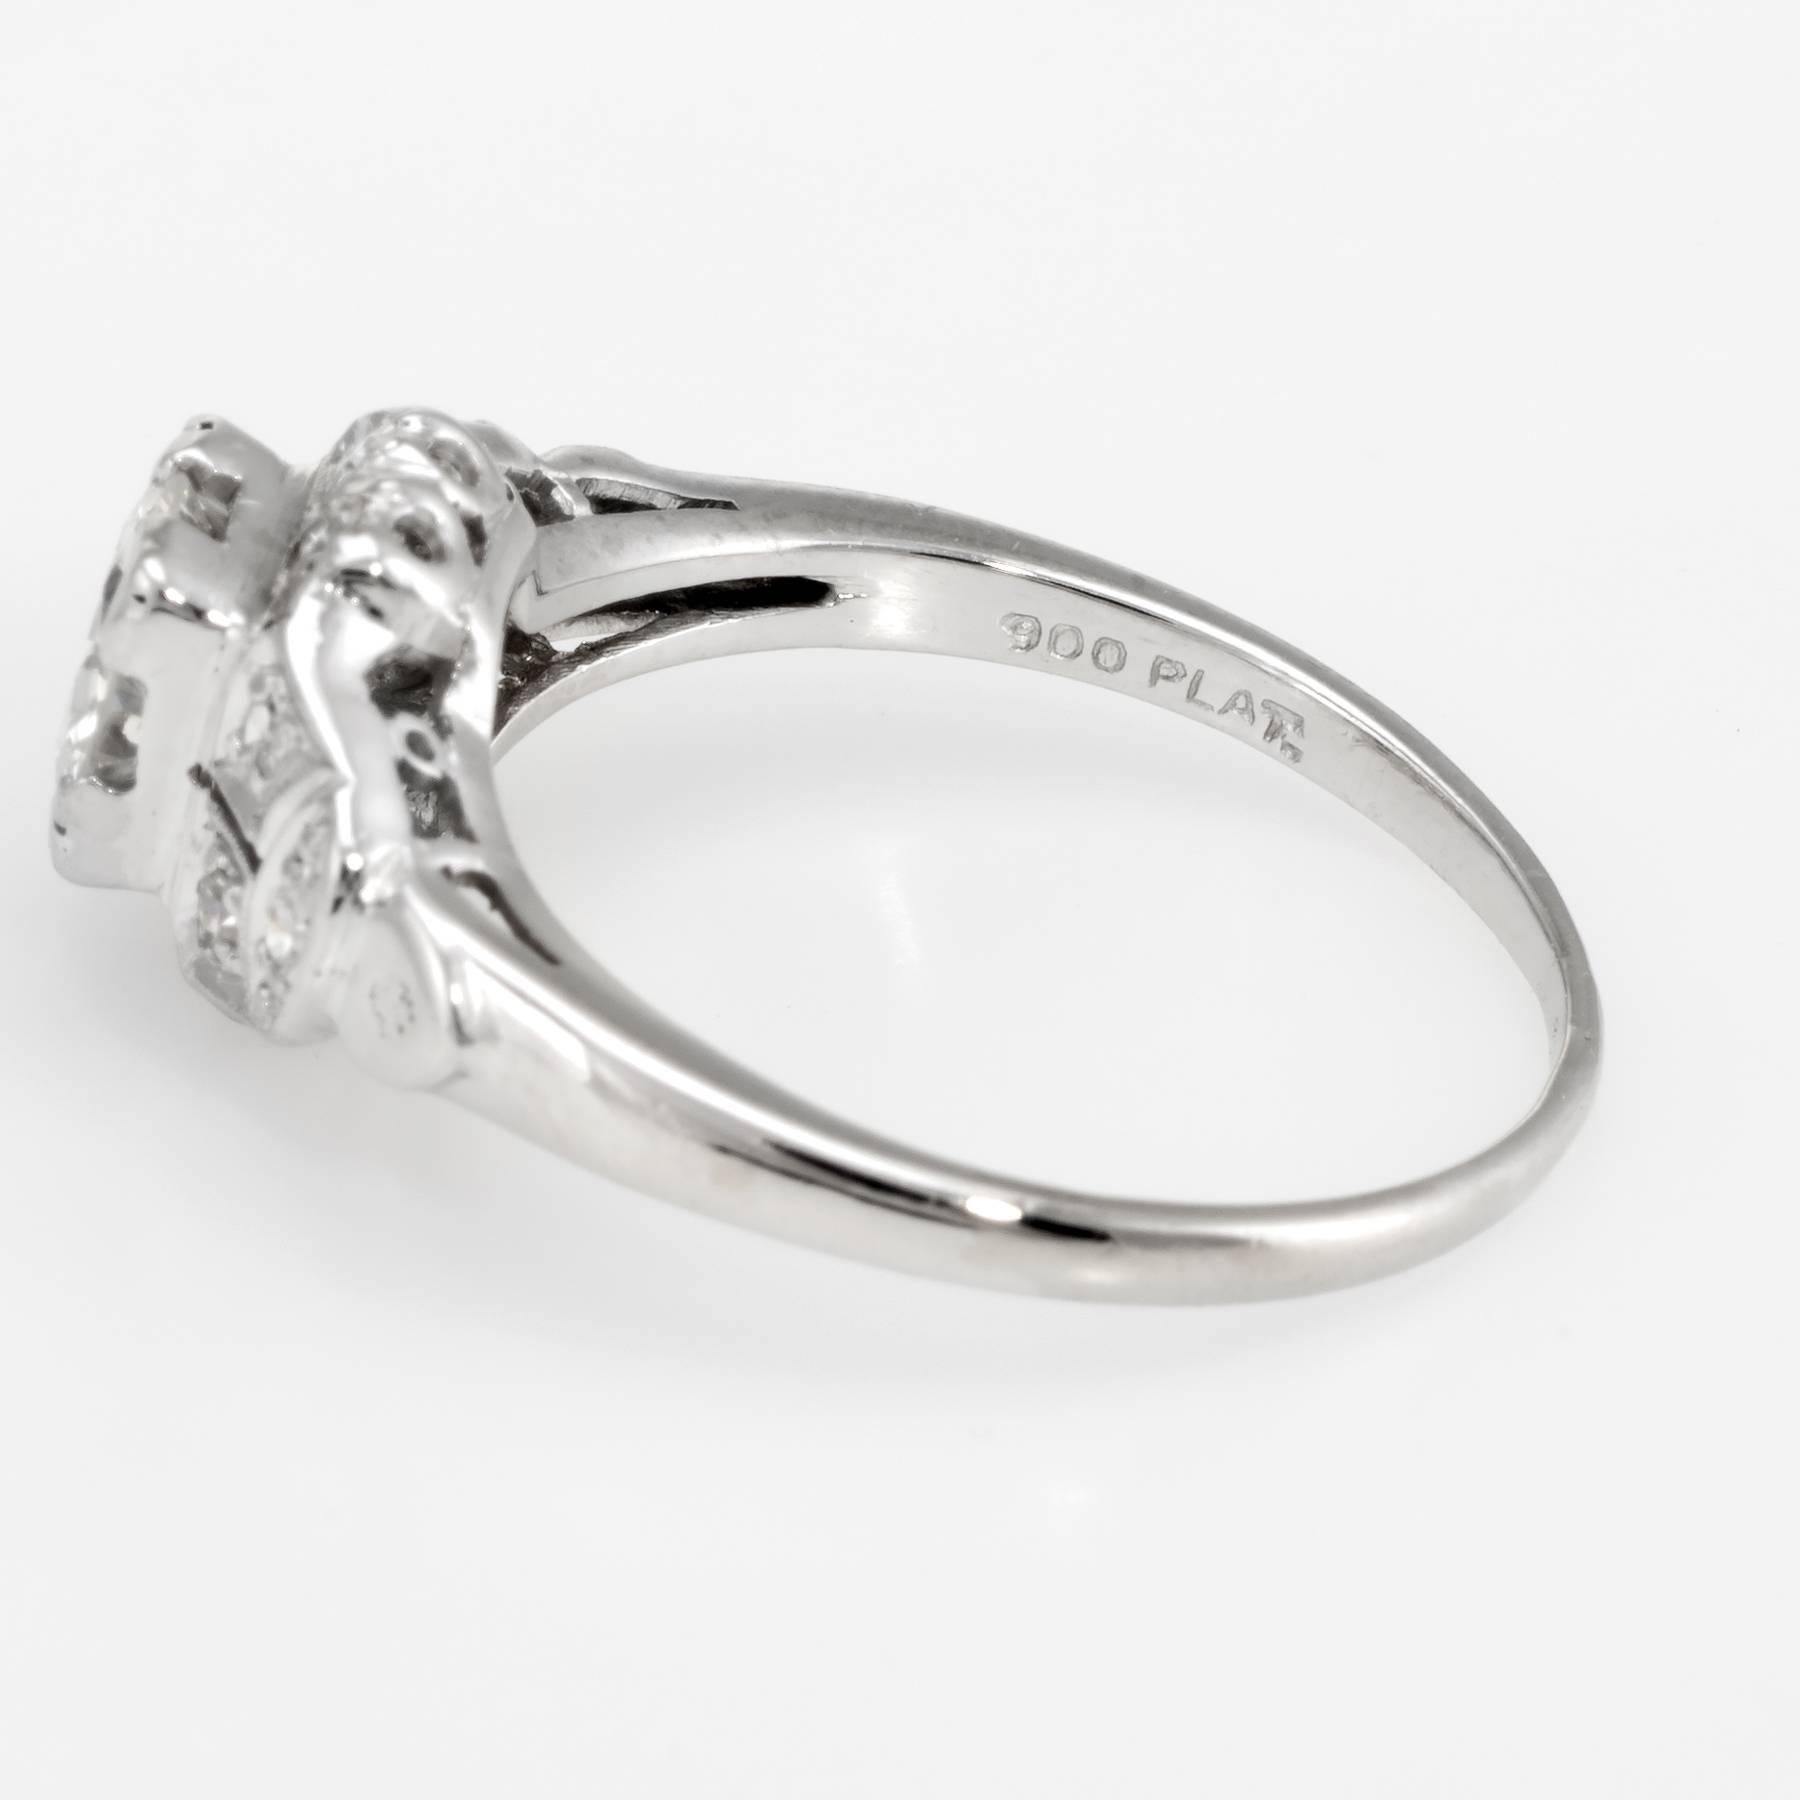 Antique Deco Diamond Platinum Engagement Ring 2